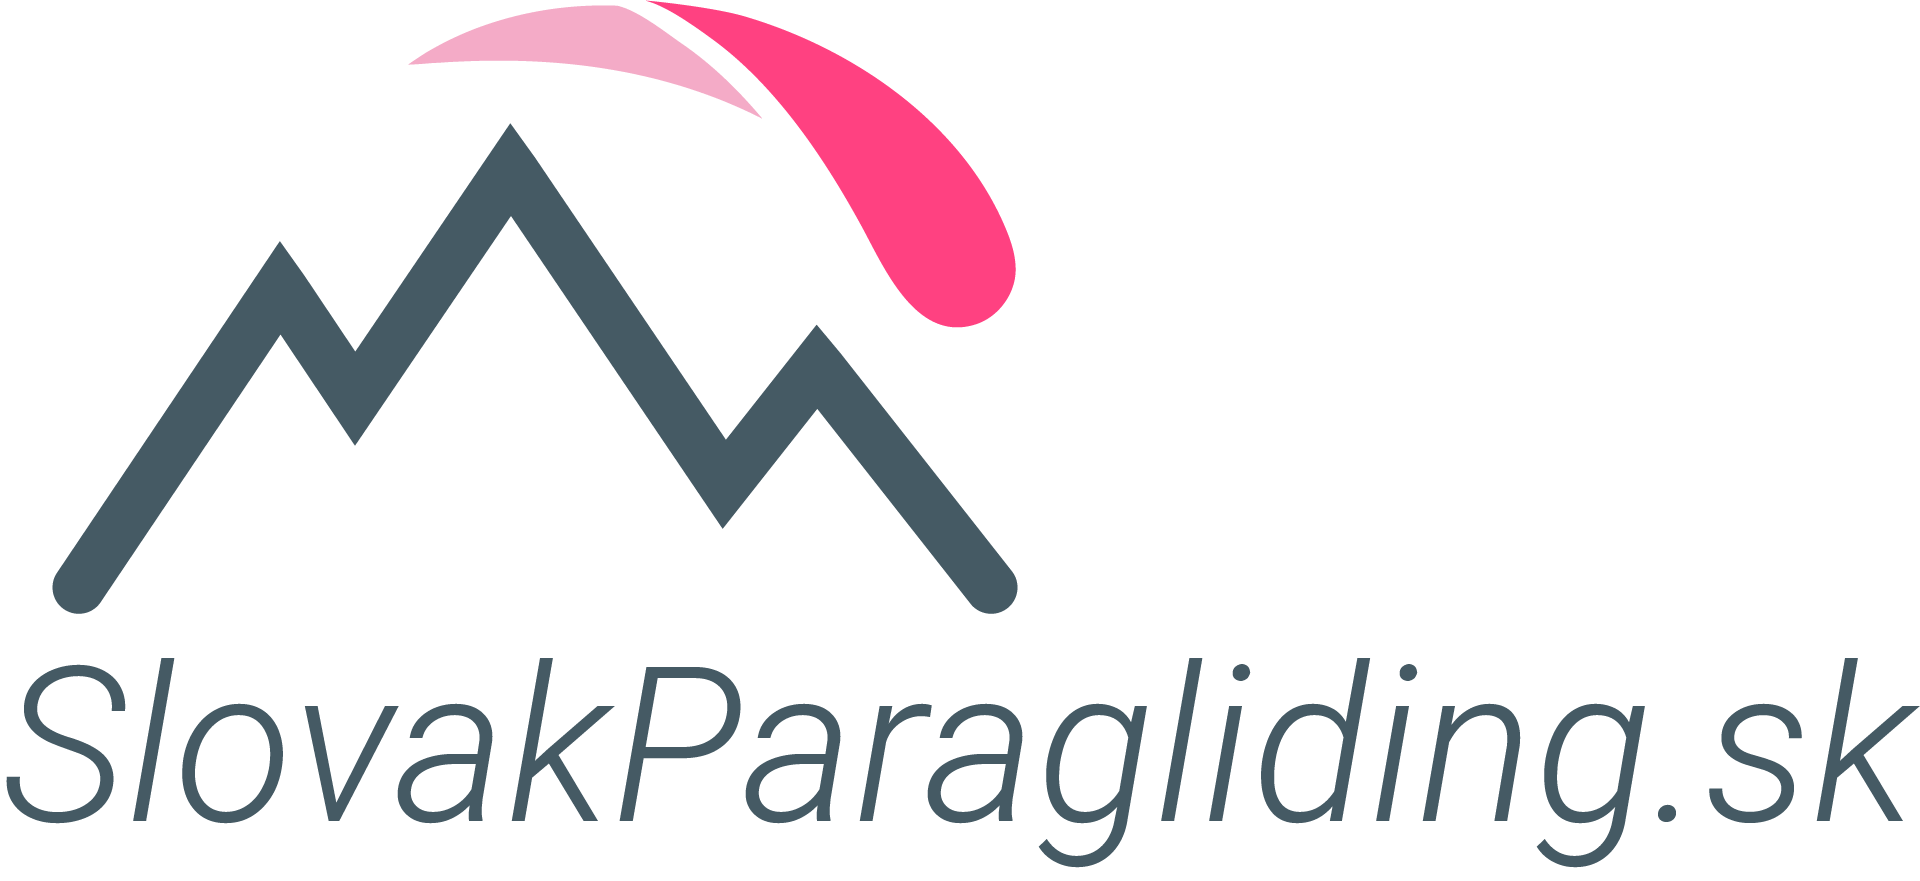 Slovak Paragliding